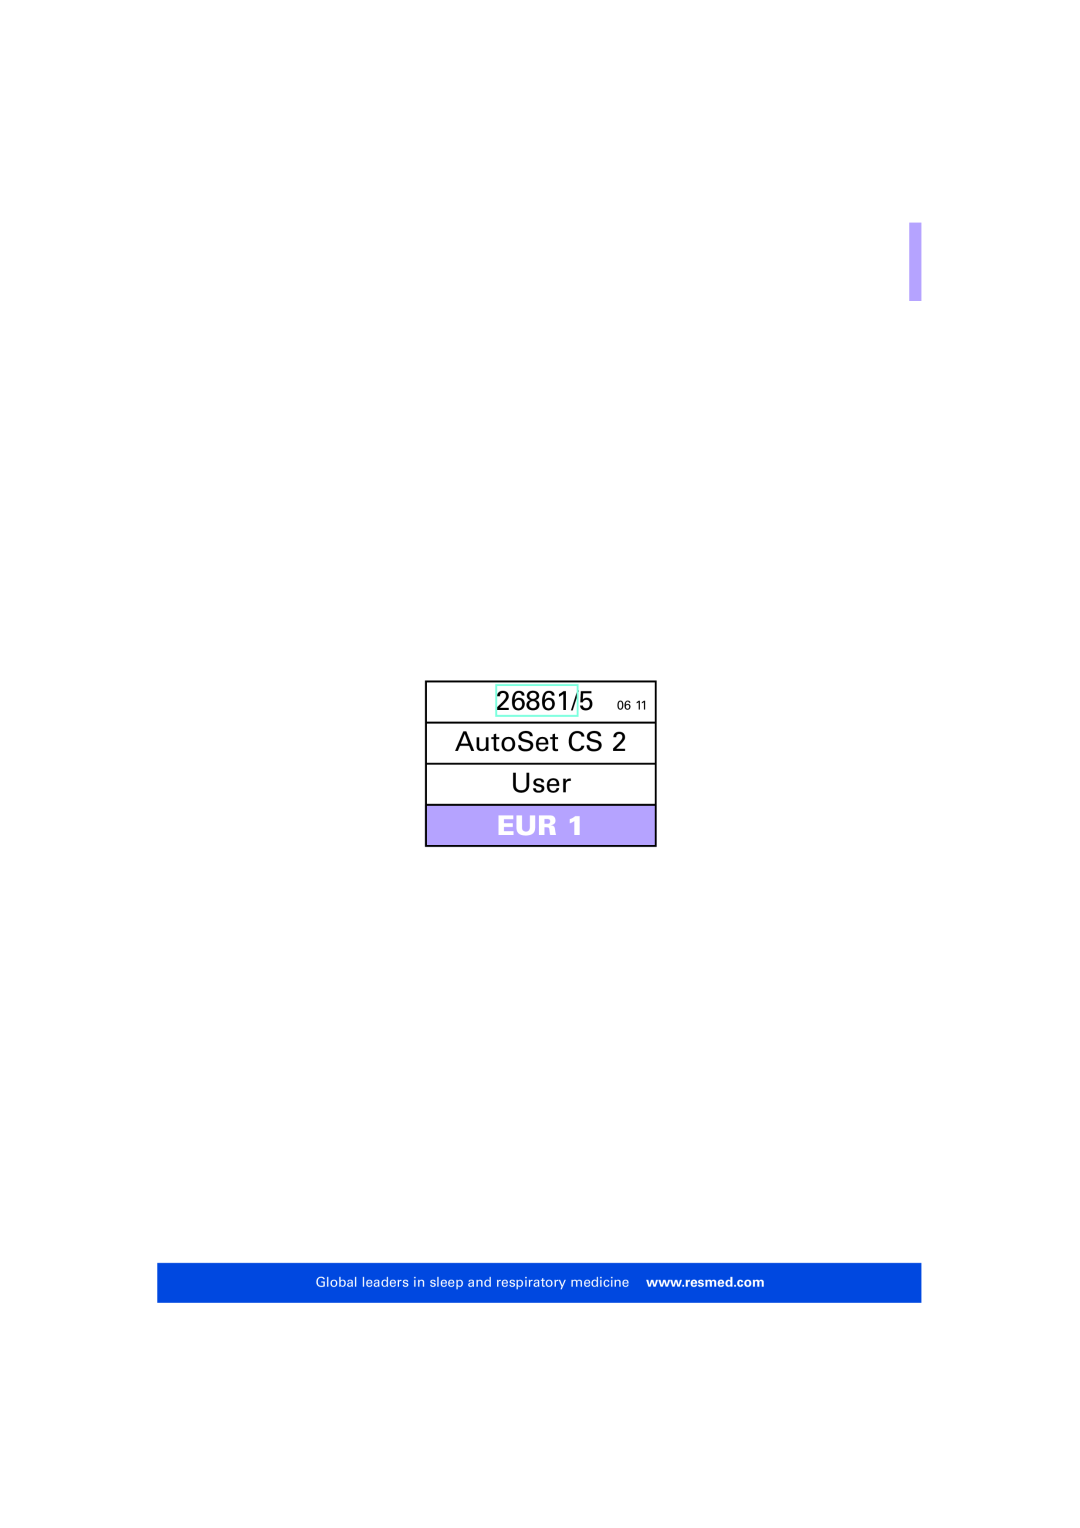 ResMed AutoSet CS 2 user manual 26861/5, AutoSet CS User 